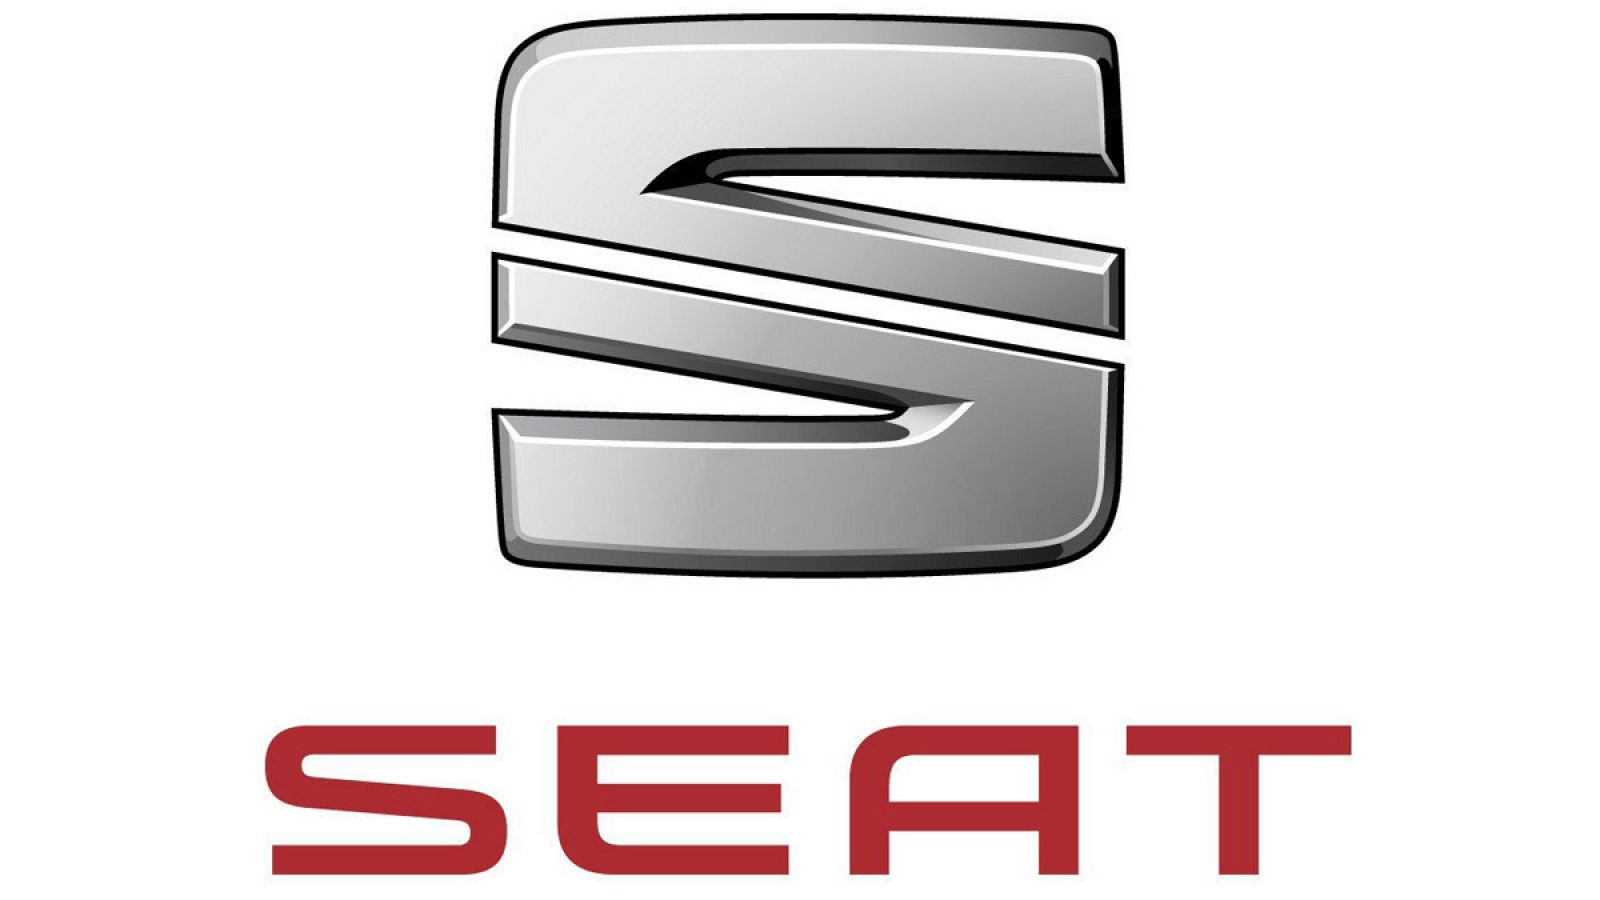 Logotipo de Seat